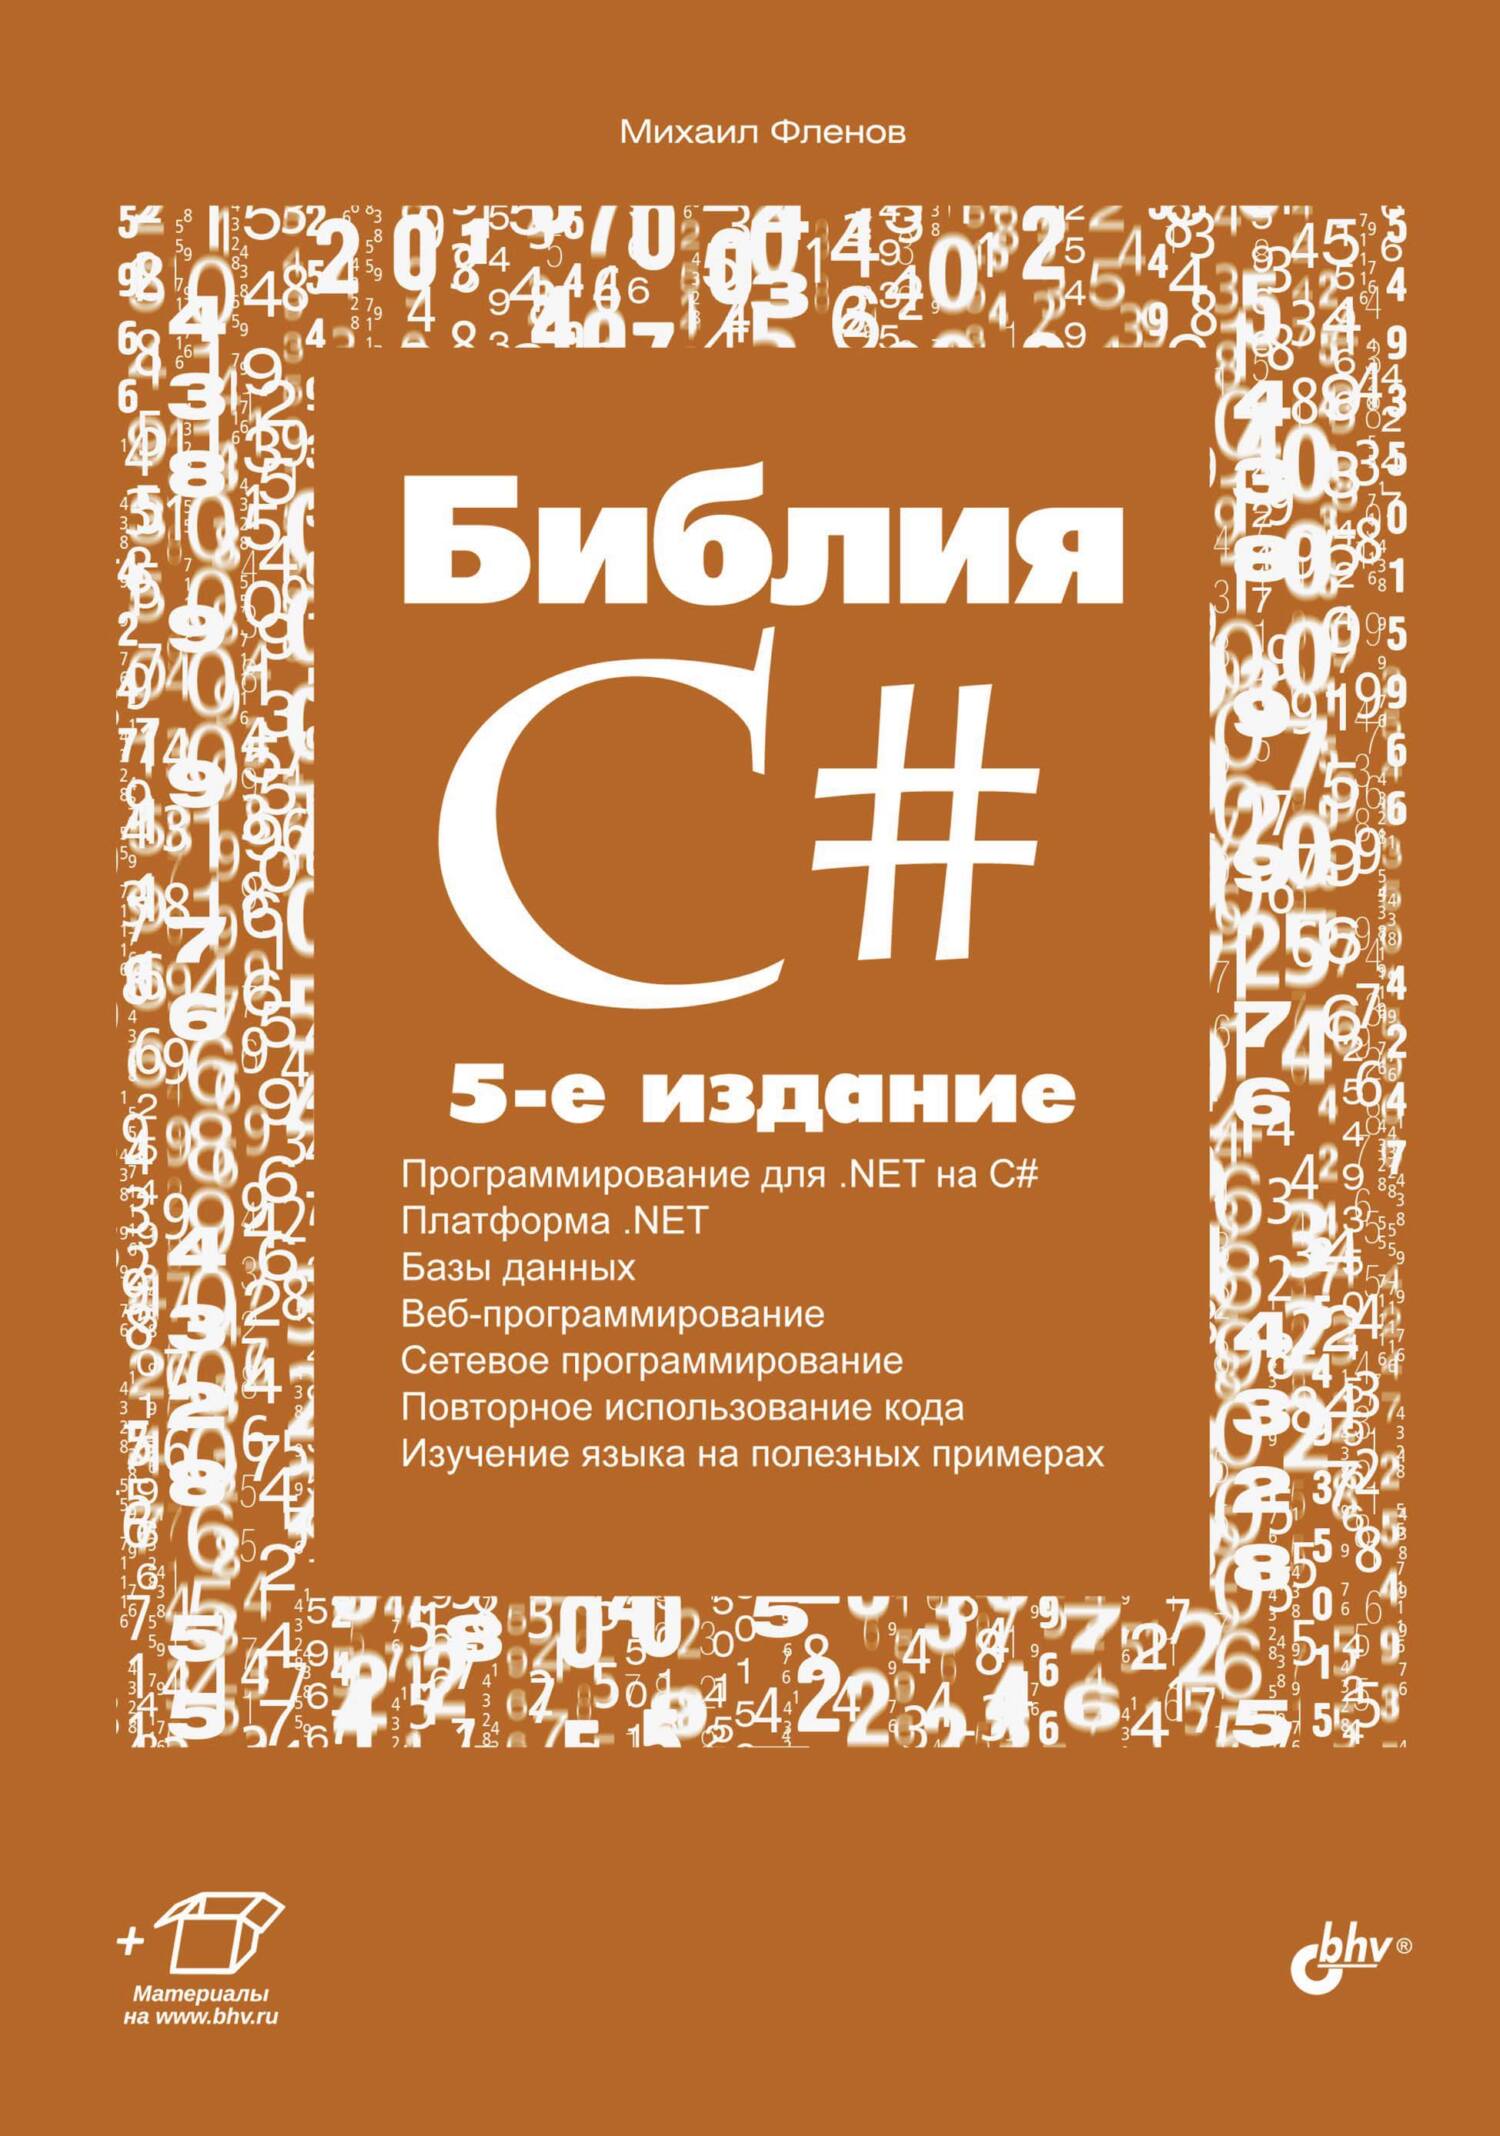 Книга  Библия C# созданная Михаил Фленов может относится к жанру программирование. Стоимость электронной книги Библия C# с идентификатором 4575419 составляет 399.00 руб.